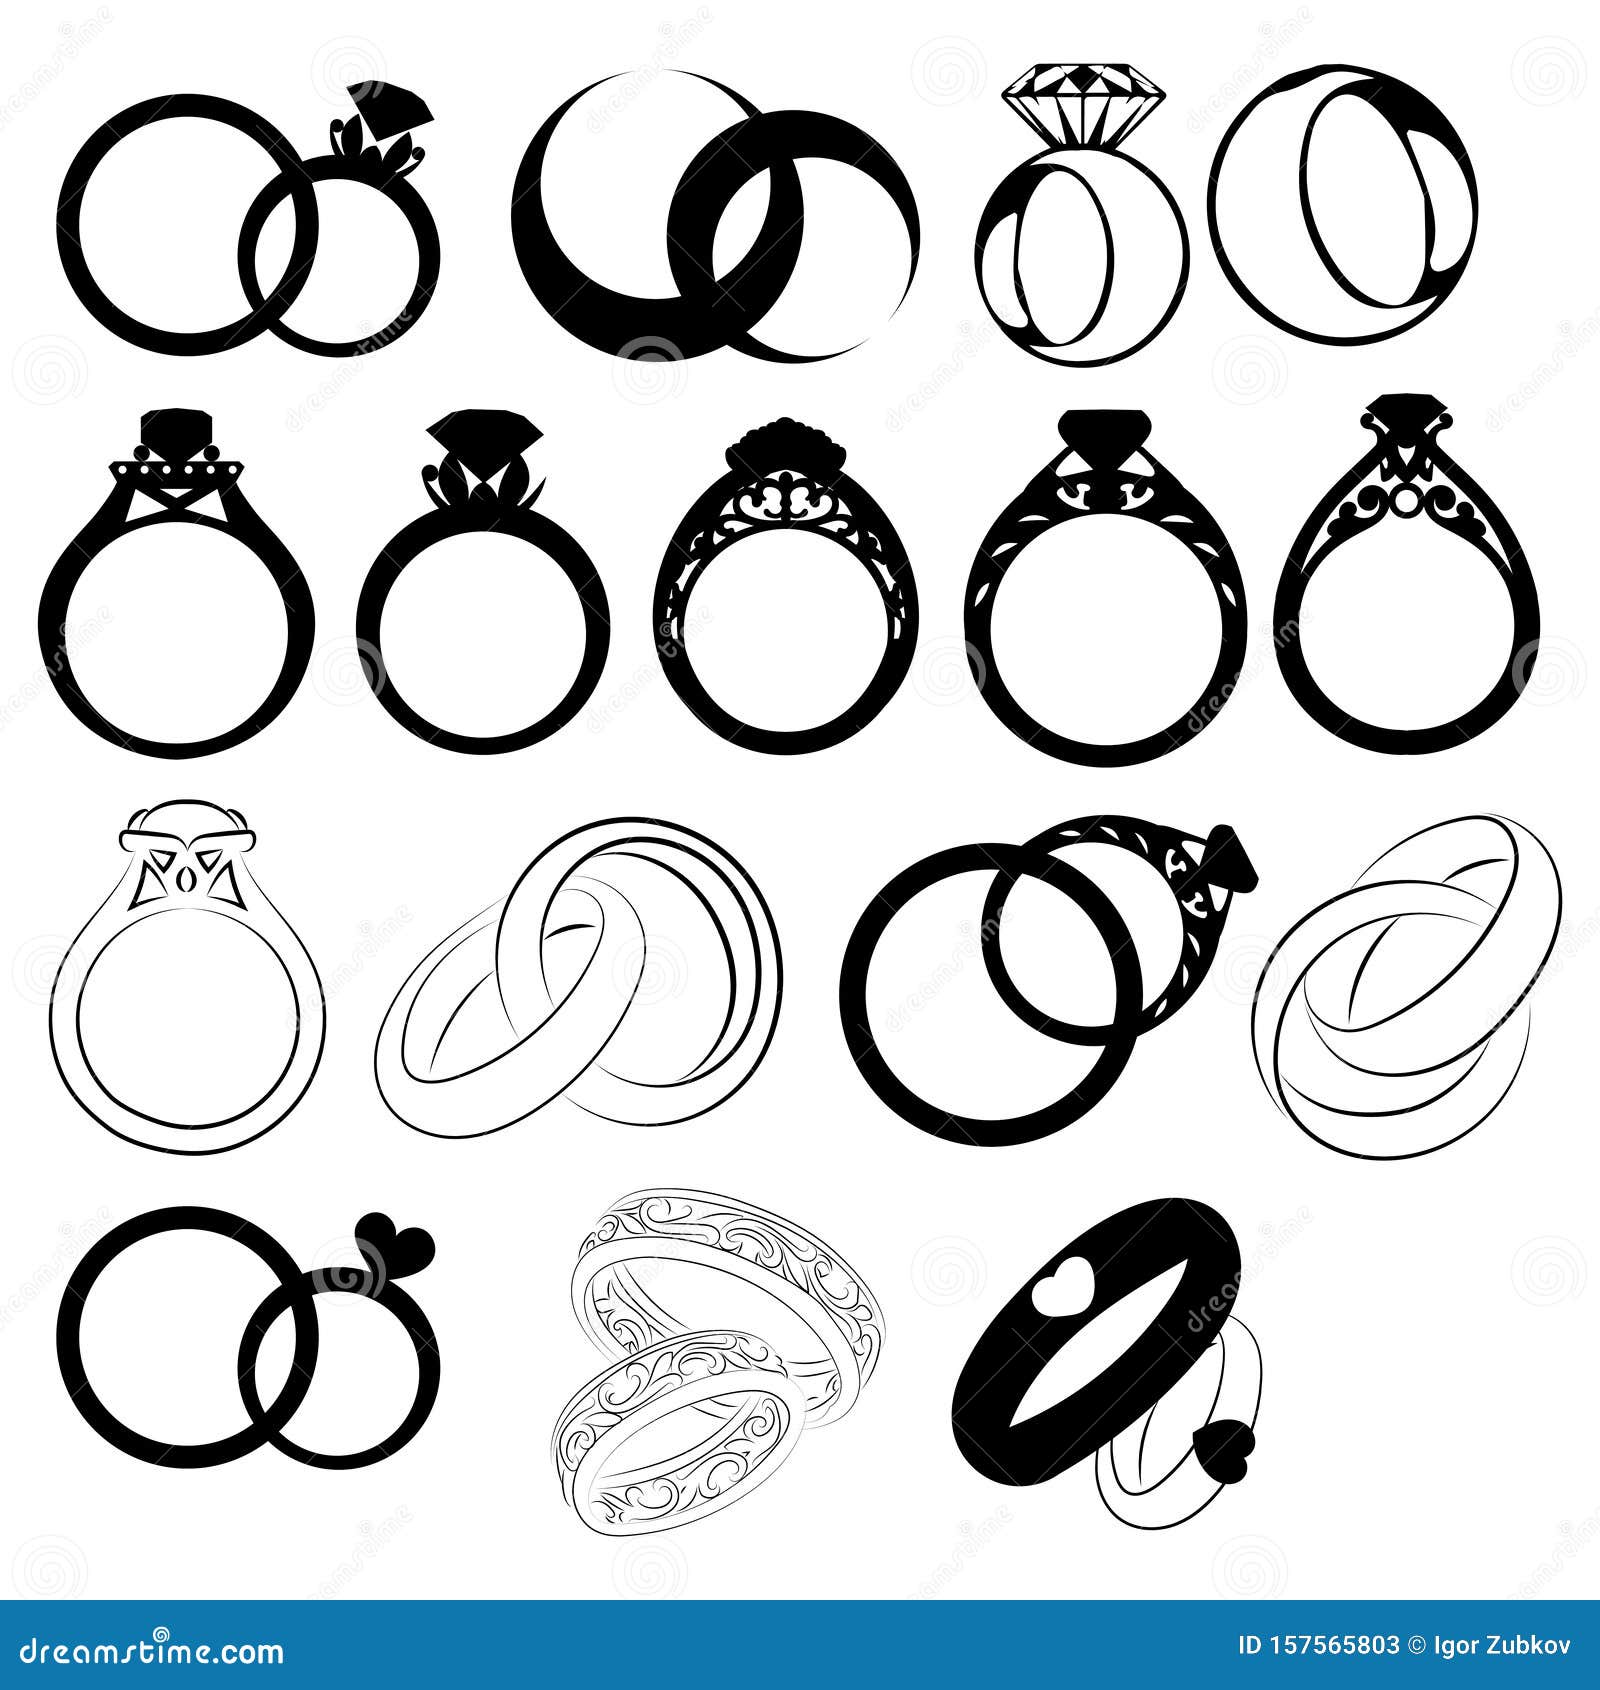 Vintage Ring Wedding Logo | Wedding ring logo, Wedding logos, Ring logo